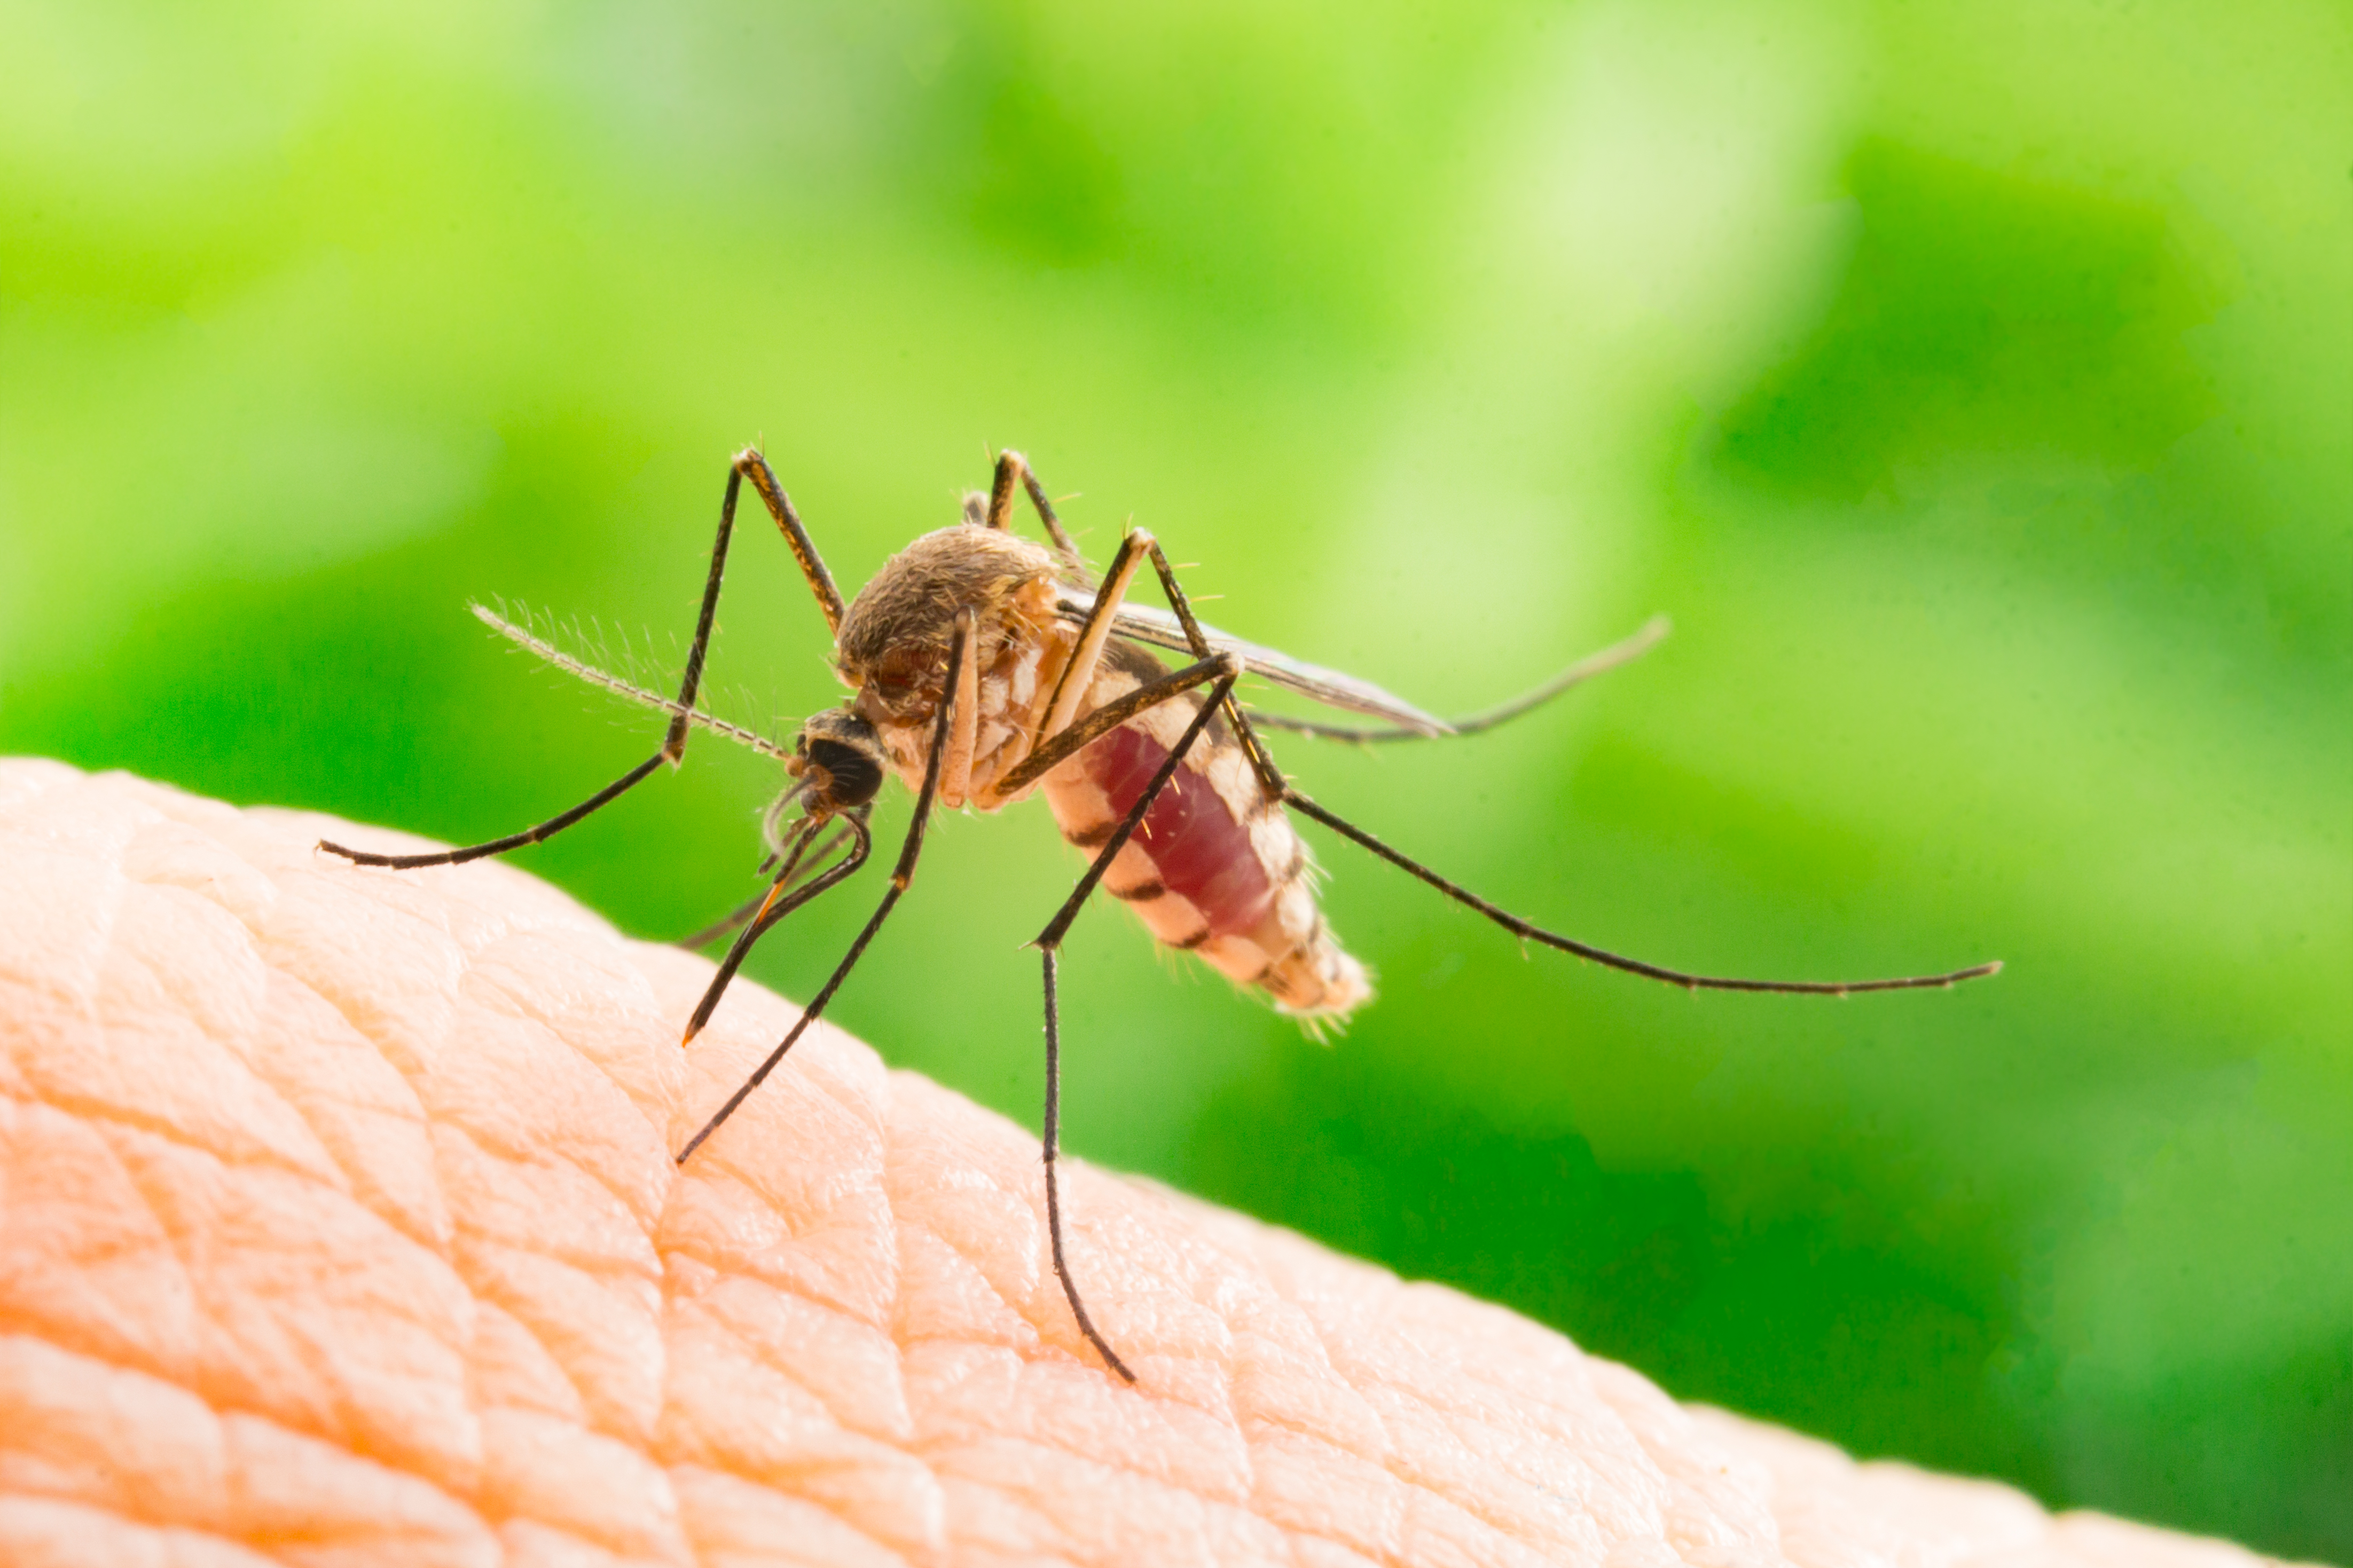 Los mosquitos en casa podrían traernos enfermedades como el dengue. (Foto Prensa Libre: Servicios).